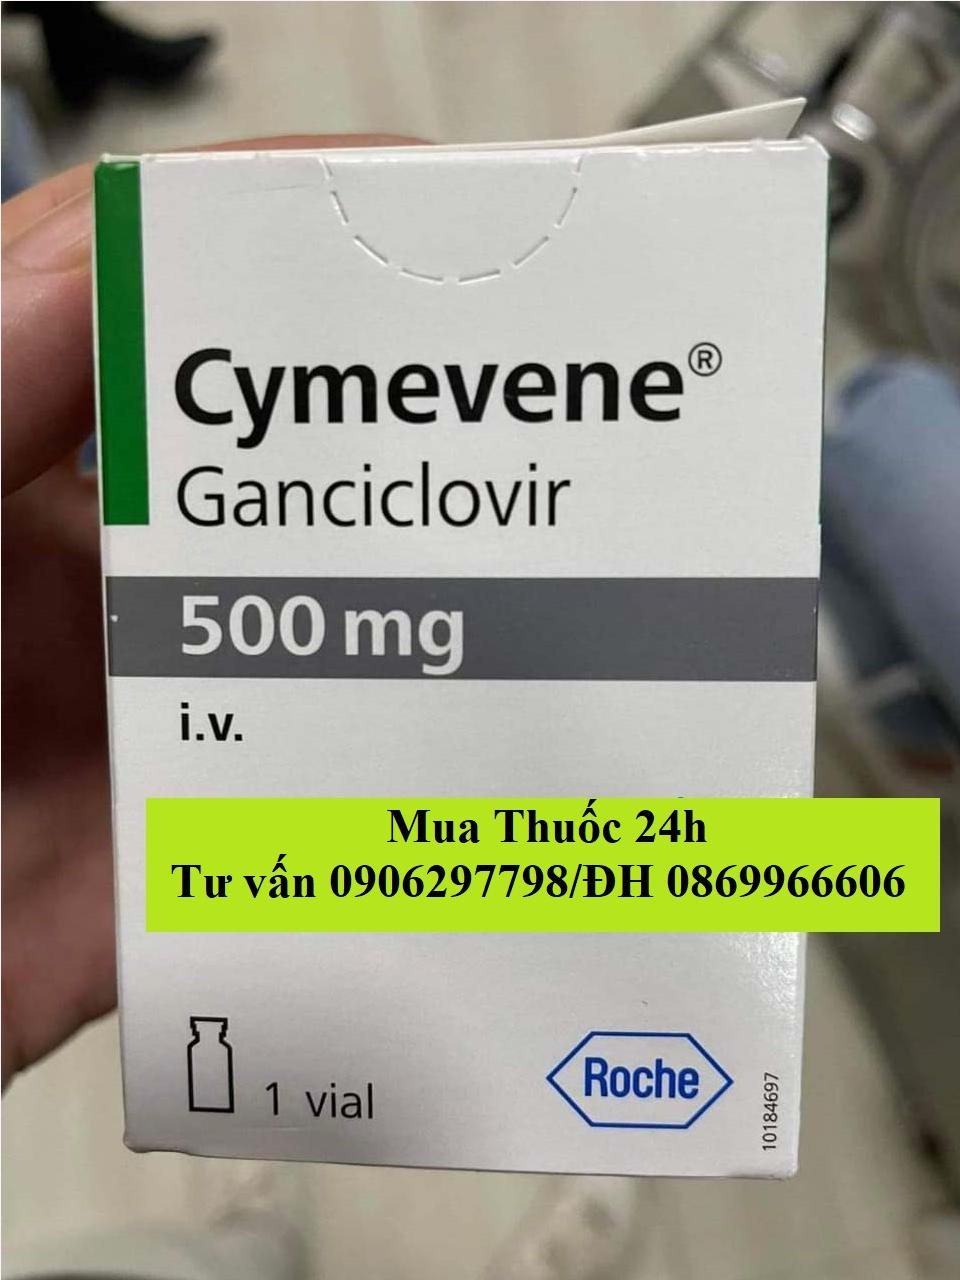 Thuốc Cymevene Ganciclovir 500mg giá bao nhiêu mua ở đâu?